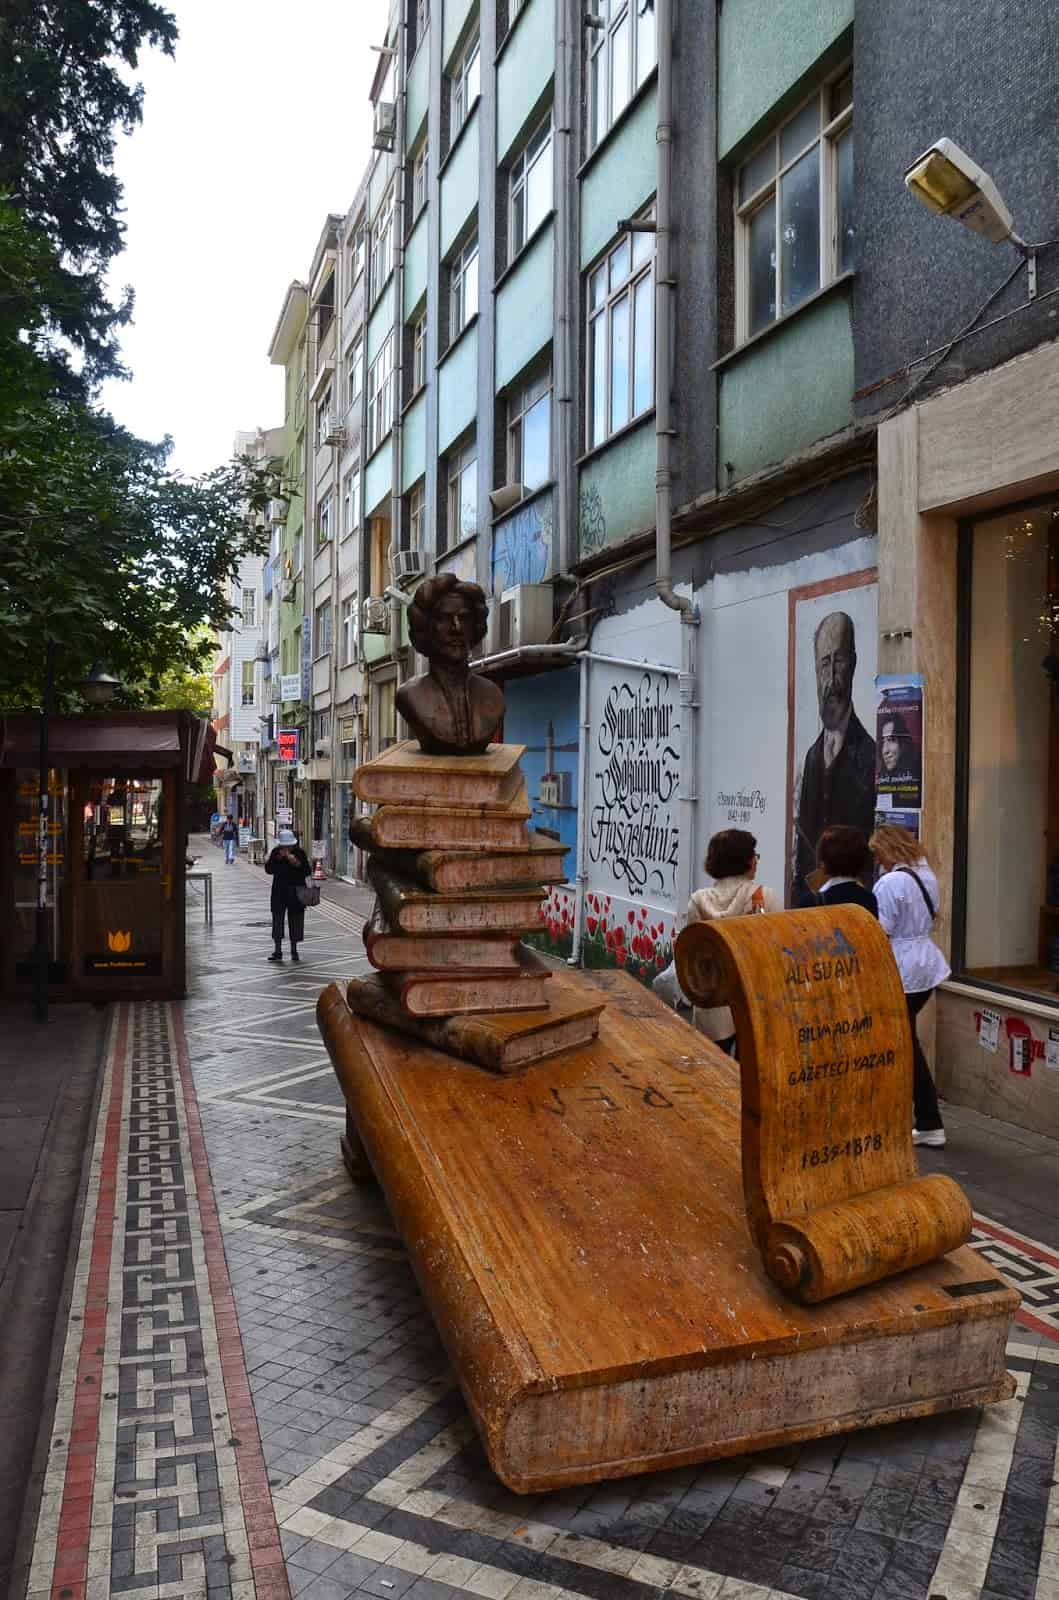 Ali Suavi Sokak in Bahariye, Kadıköy, Istanbul, Turkey